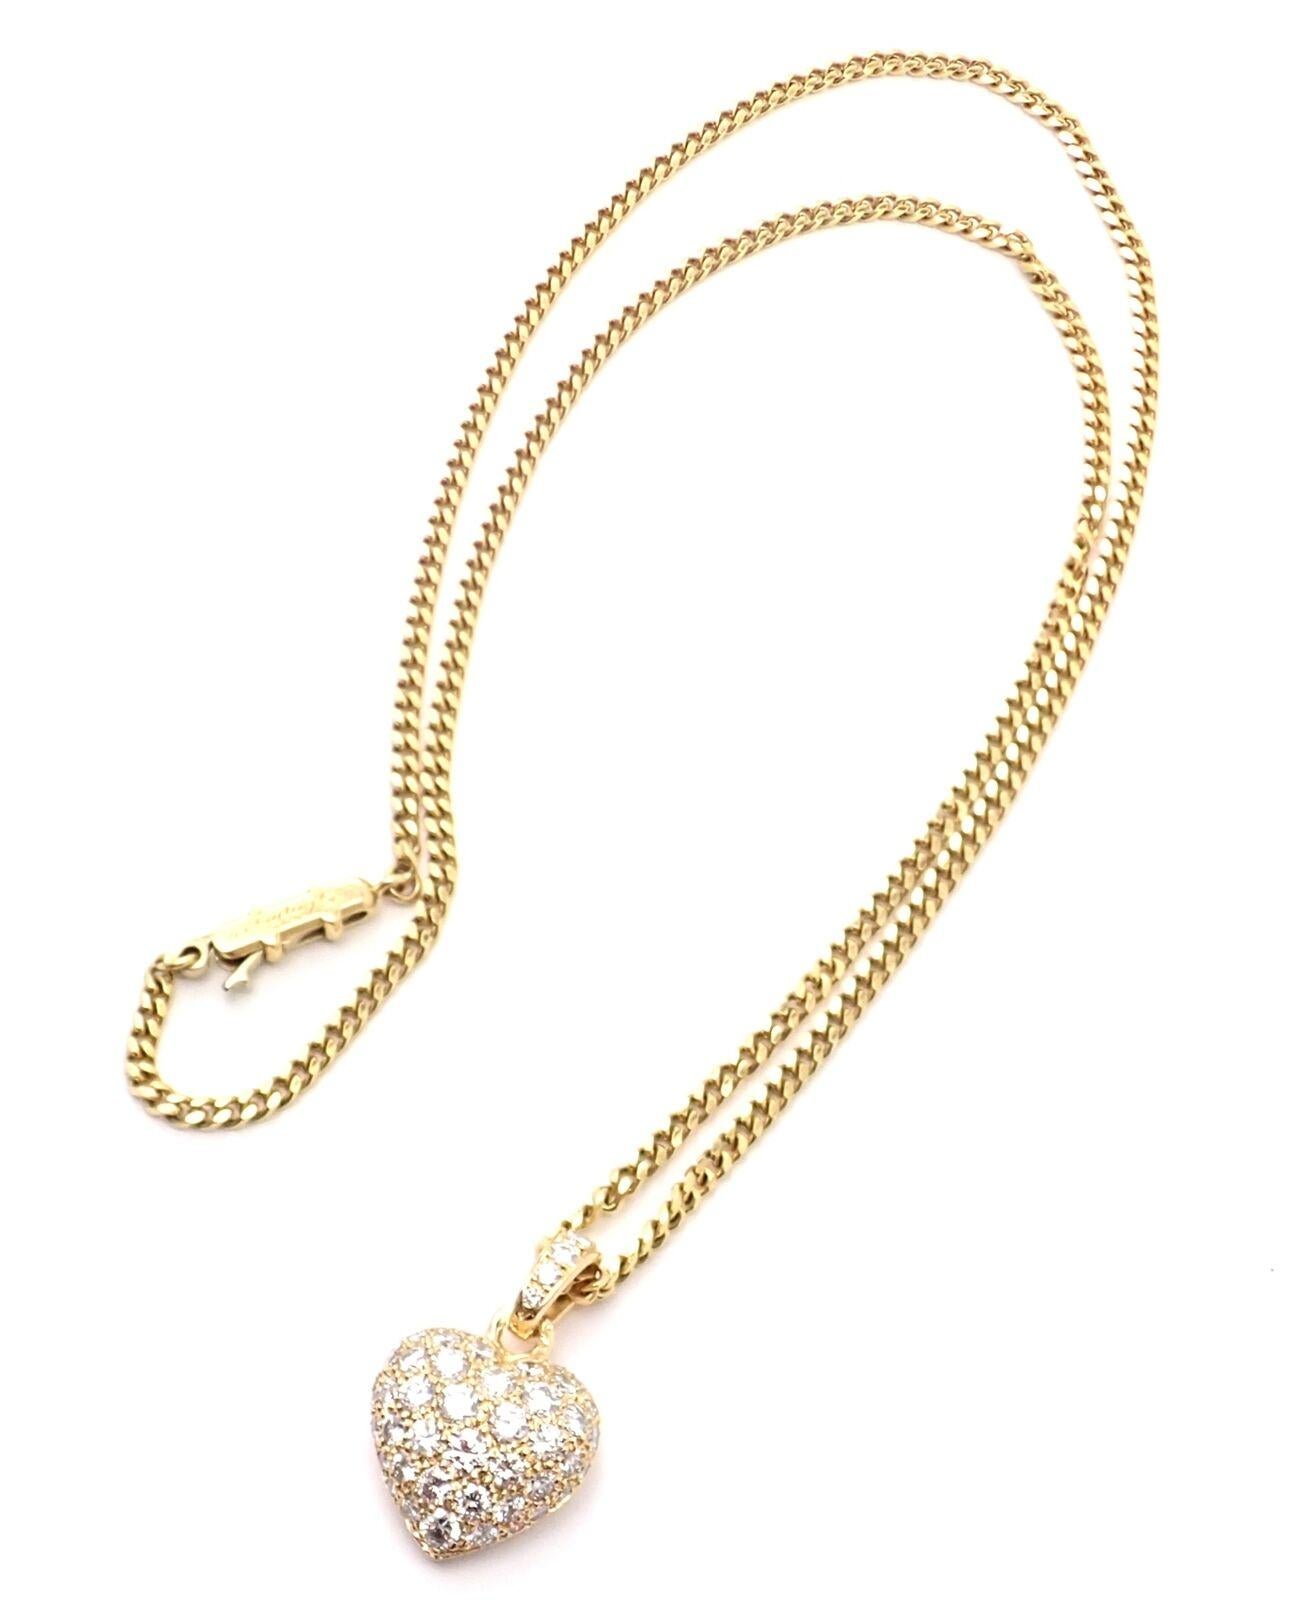 Brilliant Cut Cartier Diamond Pavé Large Heart Yellow Gold Pendant Necklace For Sale